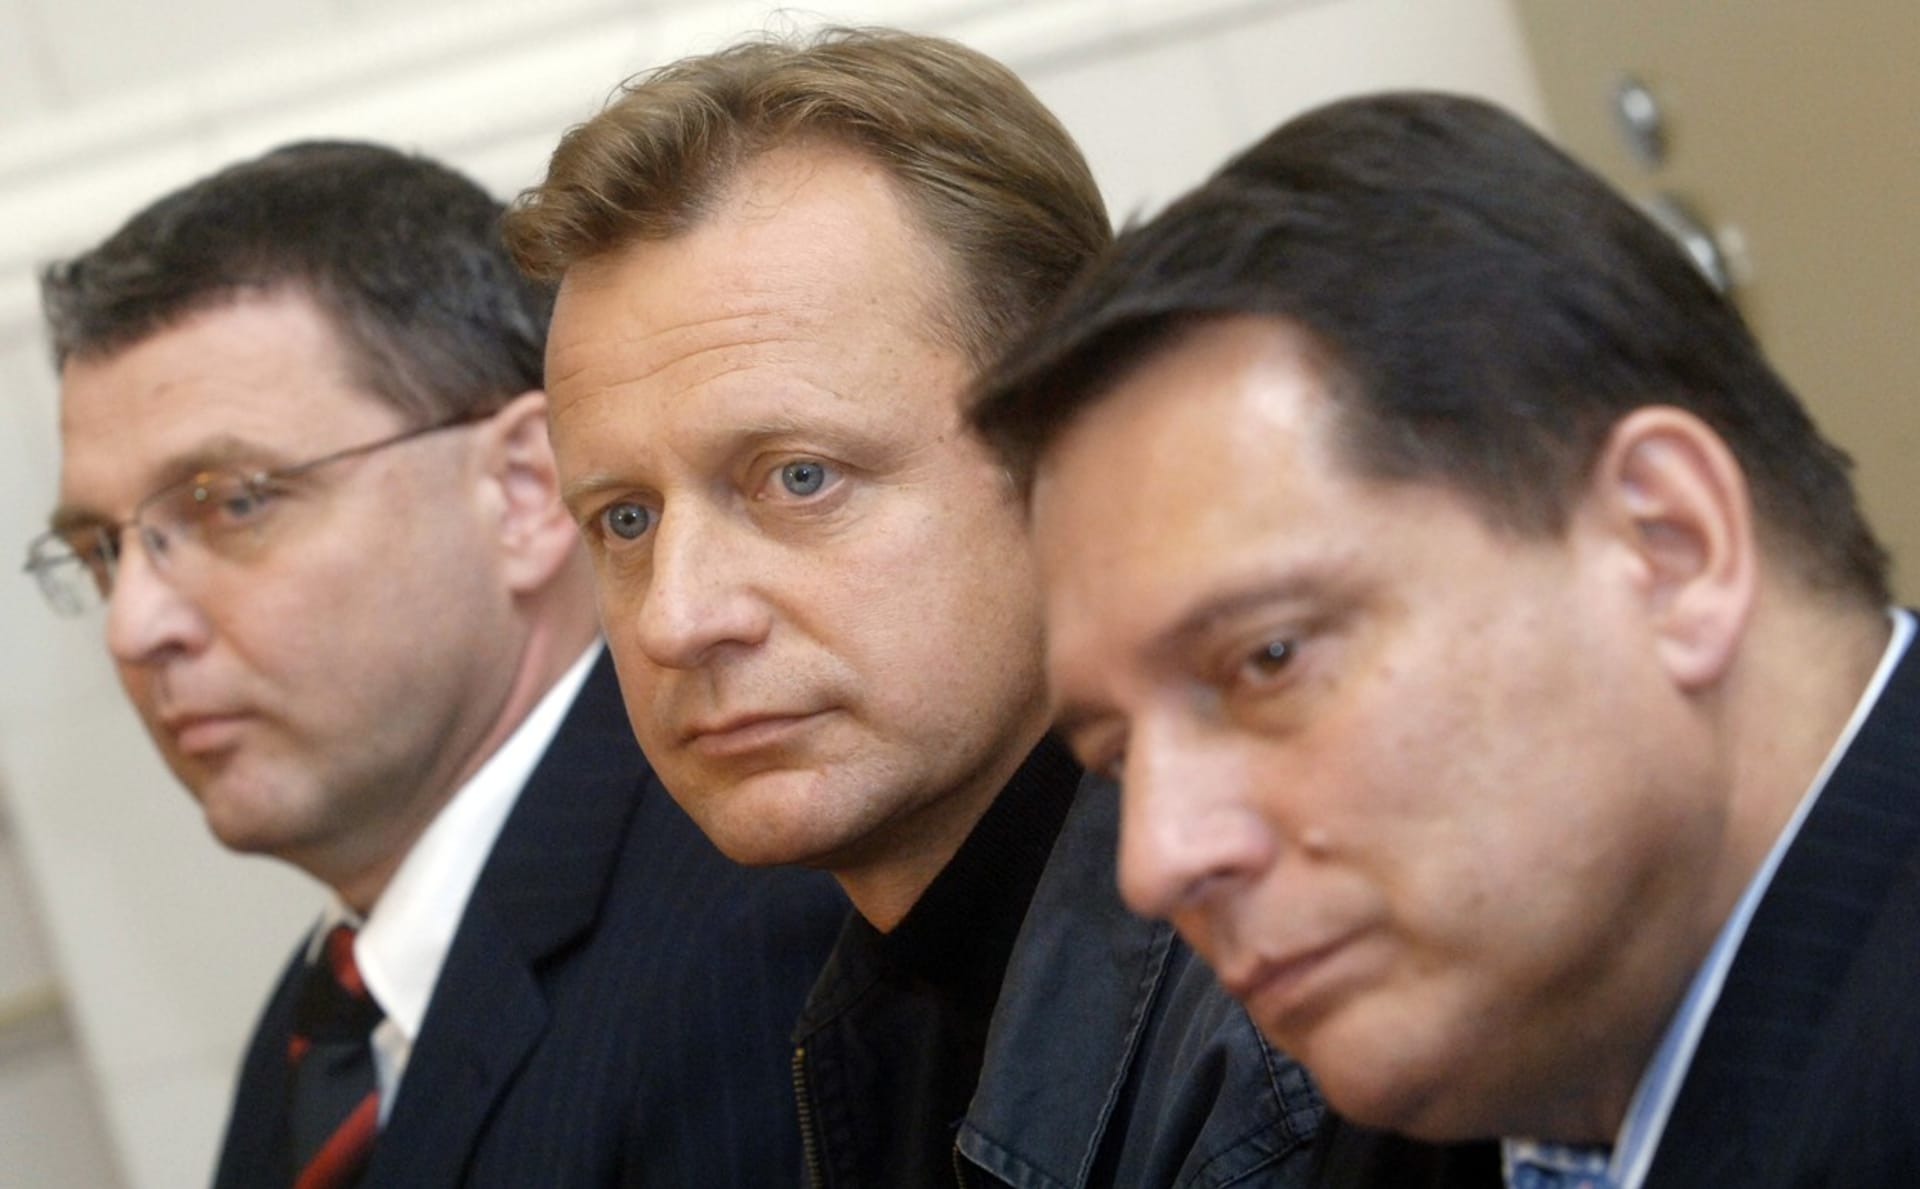 Z Pavla Ploce mladšího (uprostřed) se po konci sportovní kariéry stal politik a poslanec ČSSD.